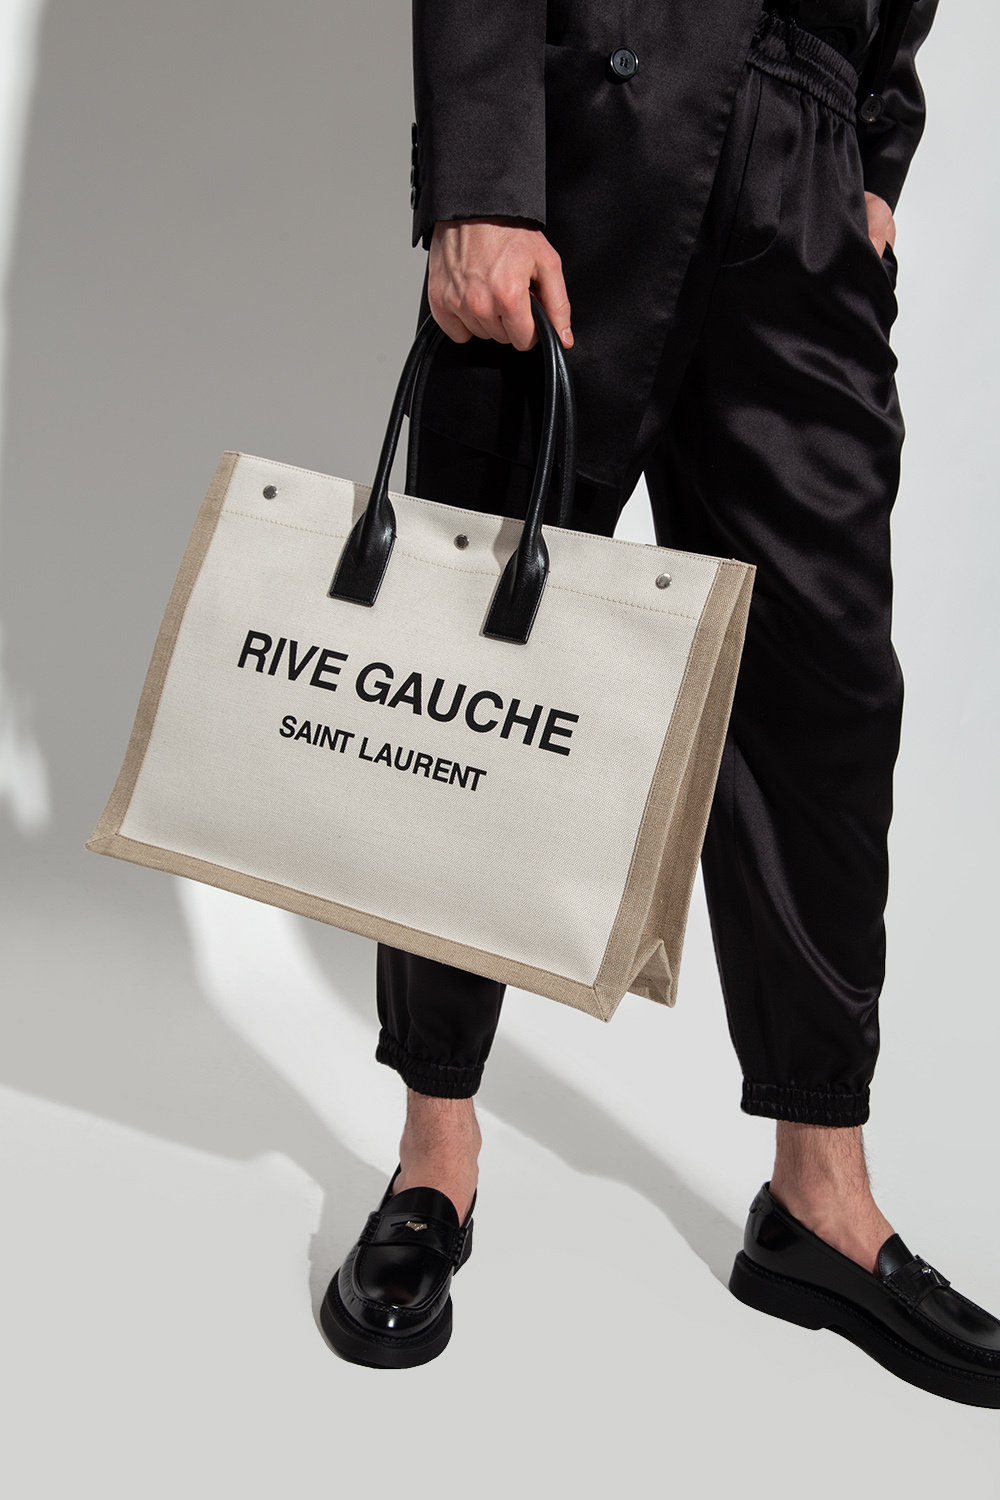 Rive Gauche Saint laurent Bag : r/DHgateRepSquad